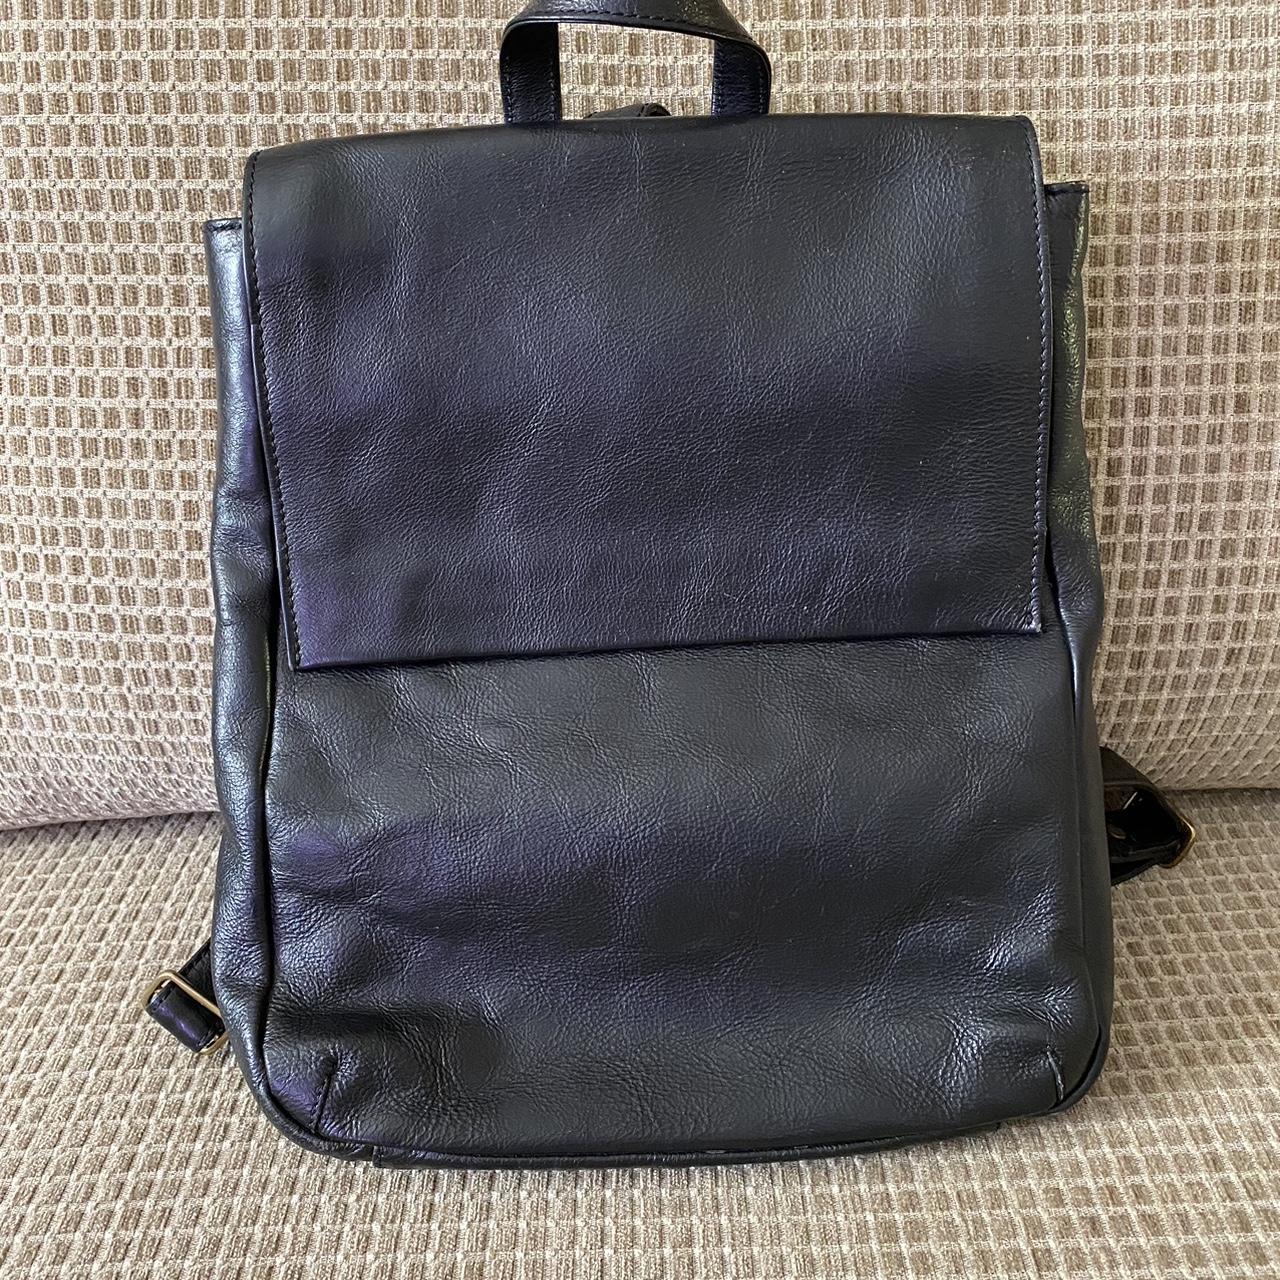 HIDESIGN black leather backpack, medium size,... - Depop